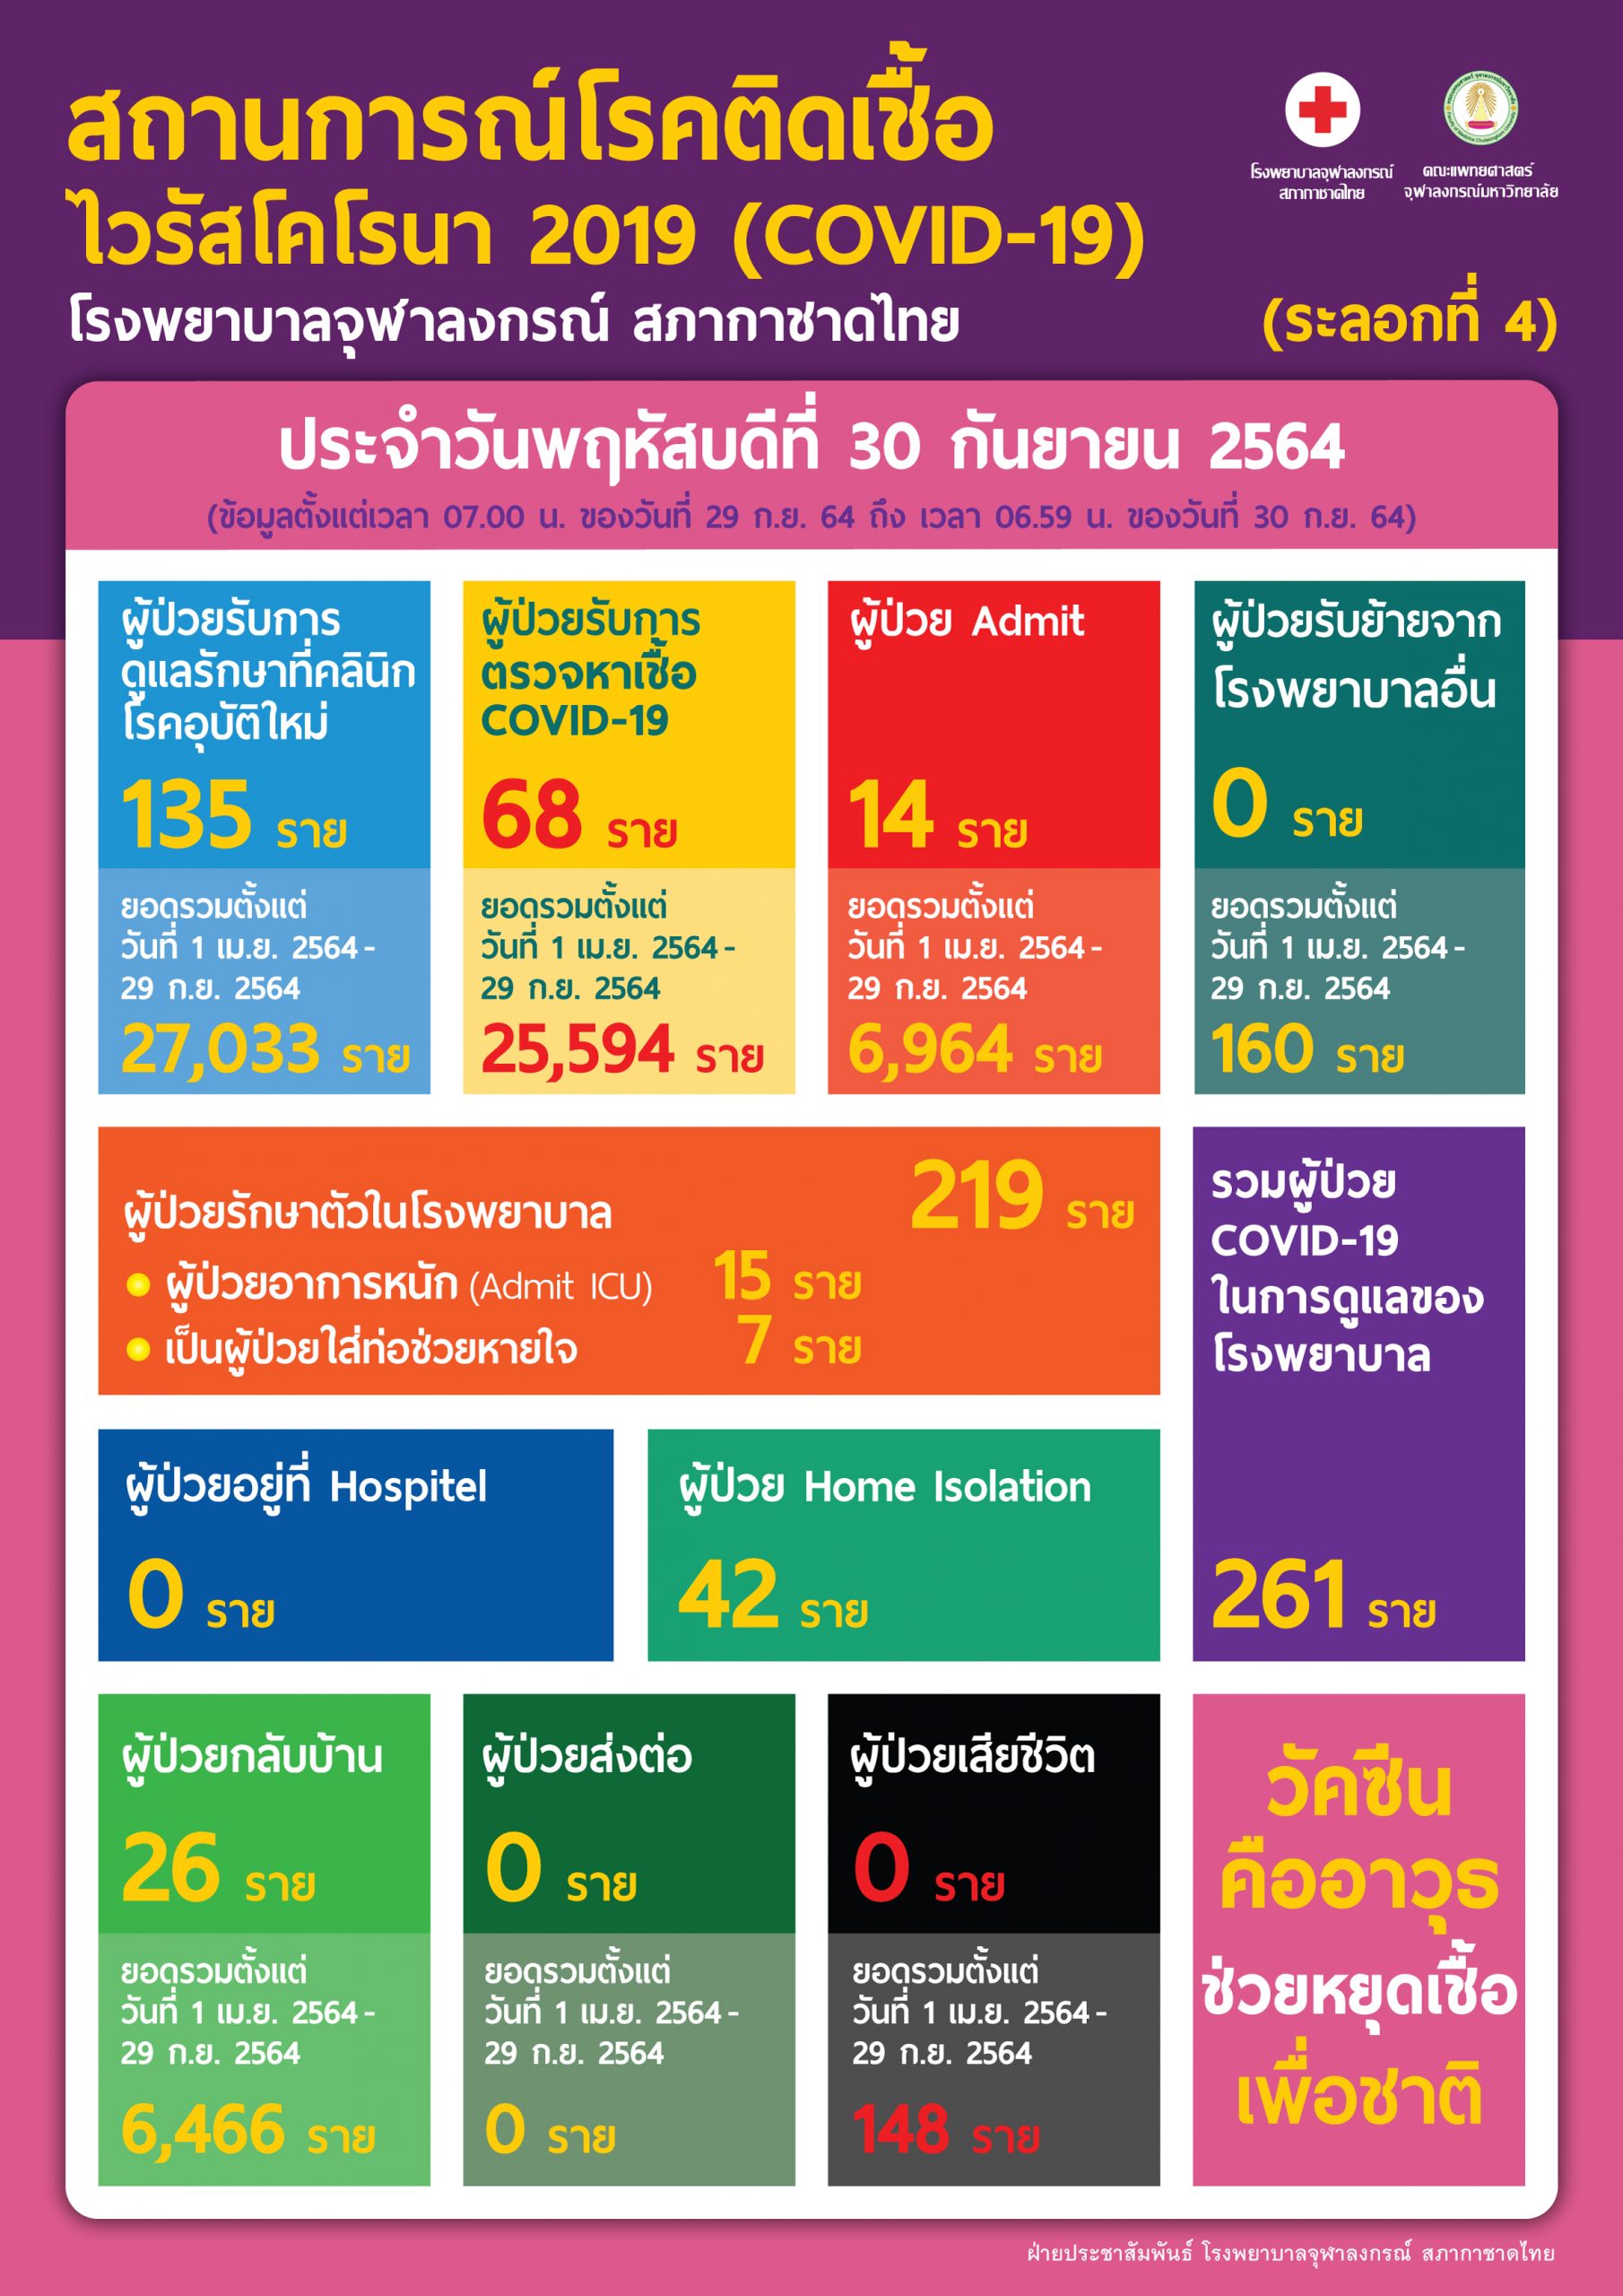 สถานการณ์โรคติดเชื้อไวรัสโคโรนา 2019 (COVID-19) (ระลอกที่ 4) โรงพยาบาลจุฬาลงกรณ์ สภากาชาดไทย ประจำวันพฤหัสบดีที่ 30 กันยายน 2564